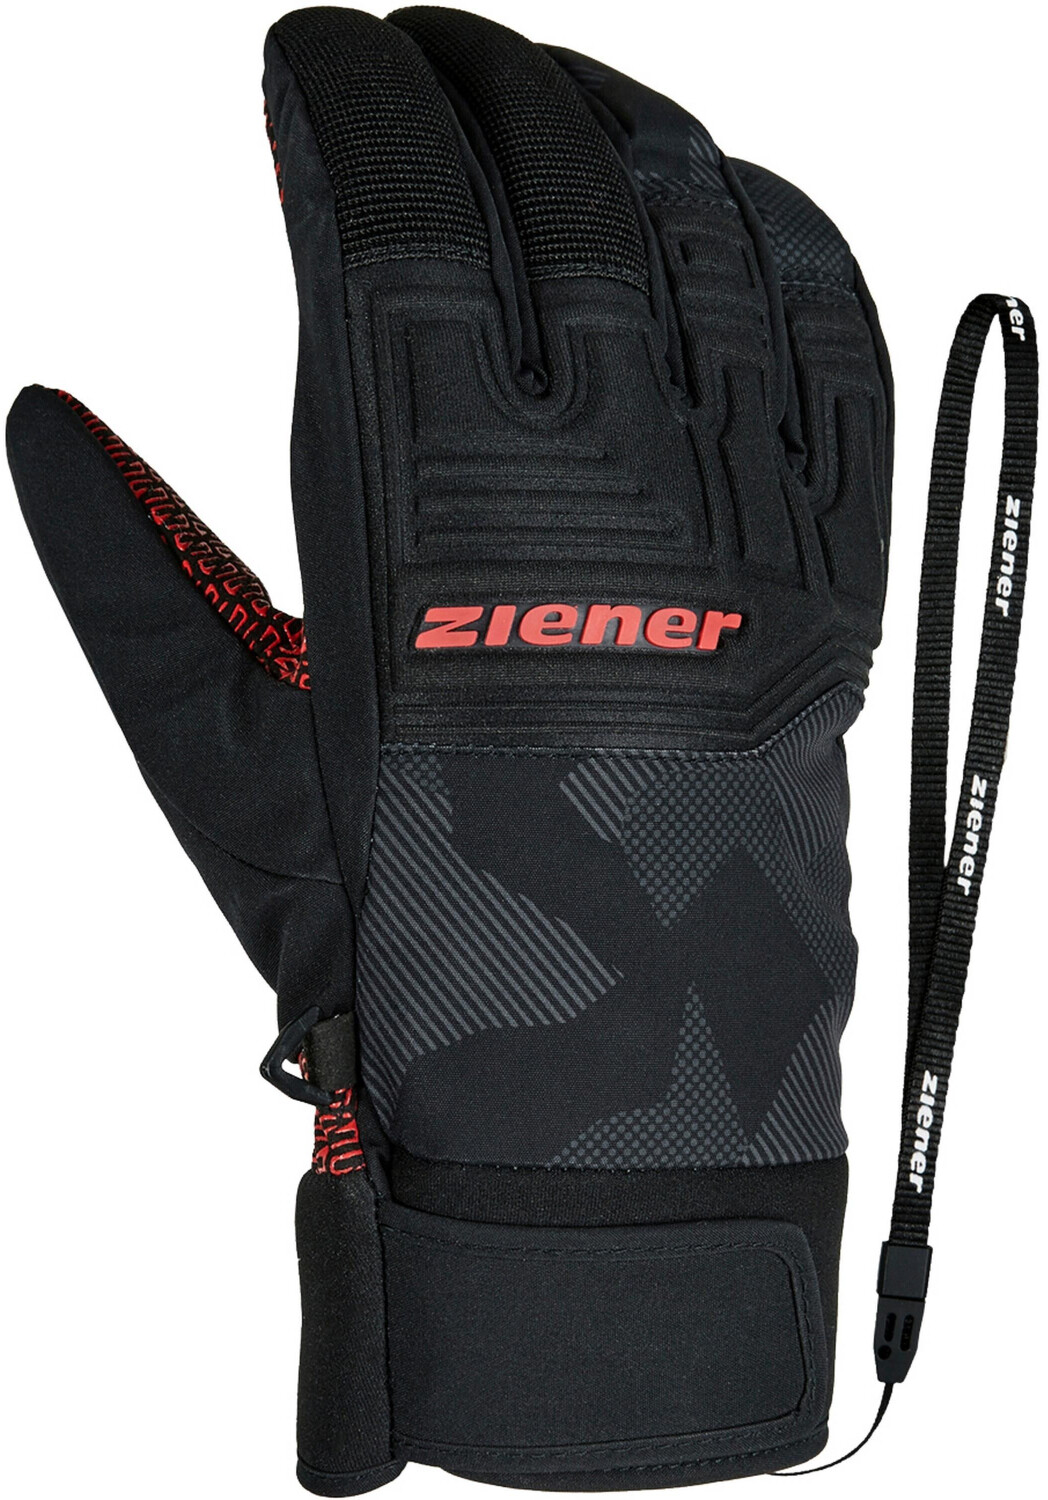 Alpine 39,99 | AS Ski Preisvergleich Garim Ziener Glove ab bei €